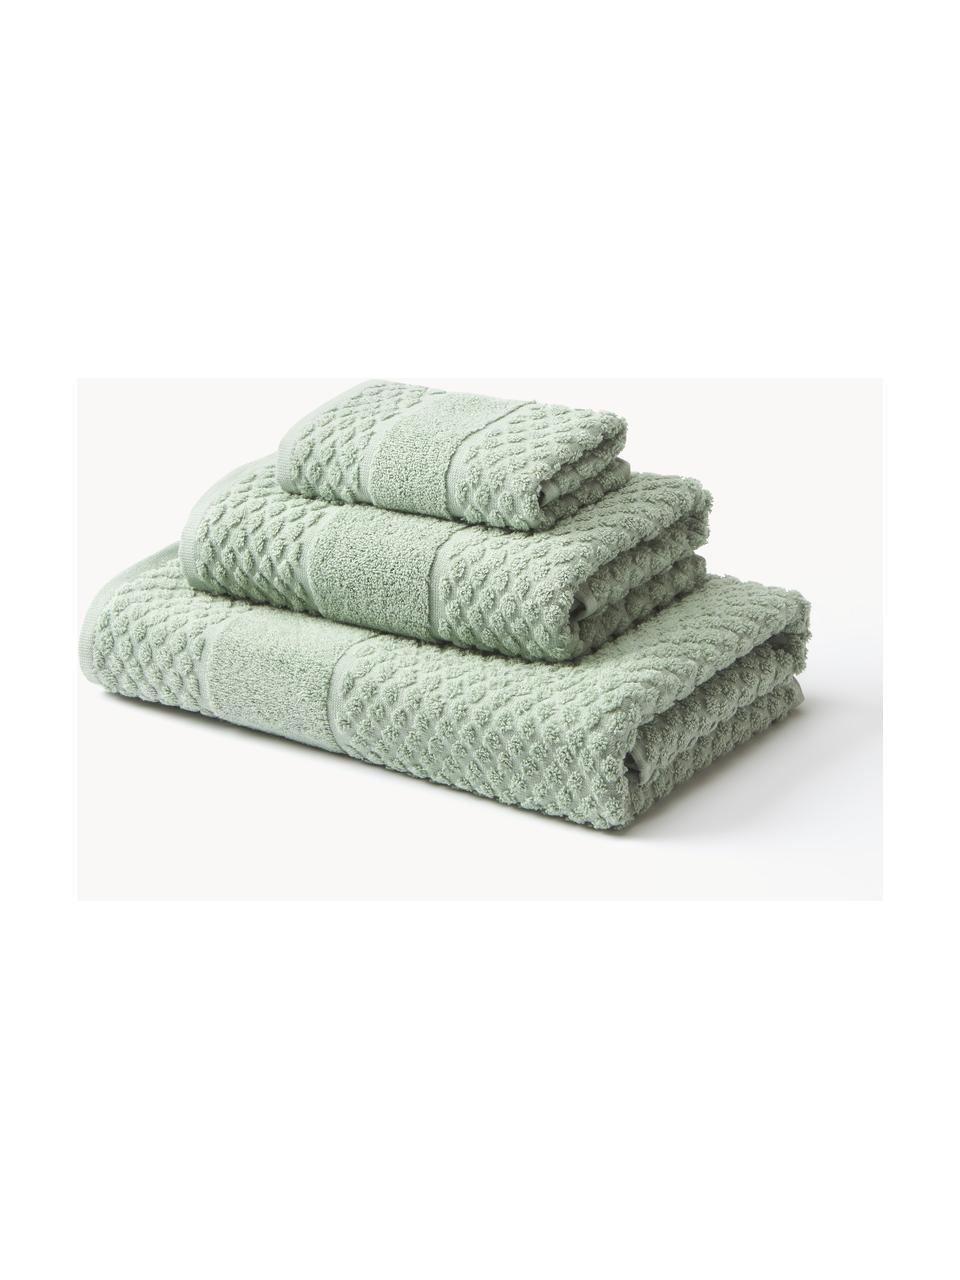 Lot de serviettes de bain Katharina, tailles variées, Vert sauge, 4 éléments (2 serviettes de toilette et 2 draps de bain)